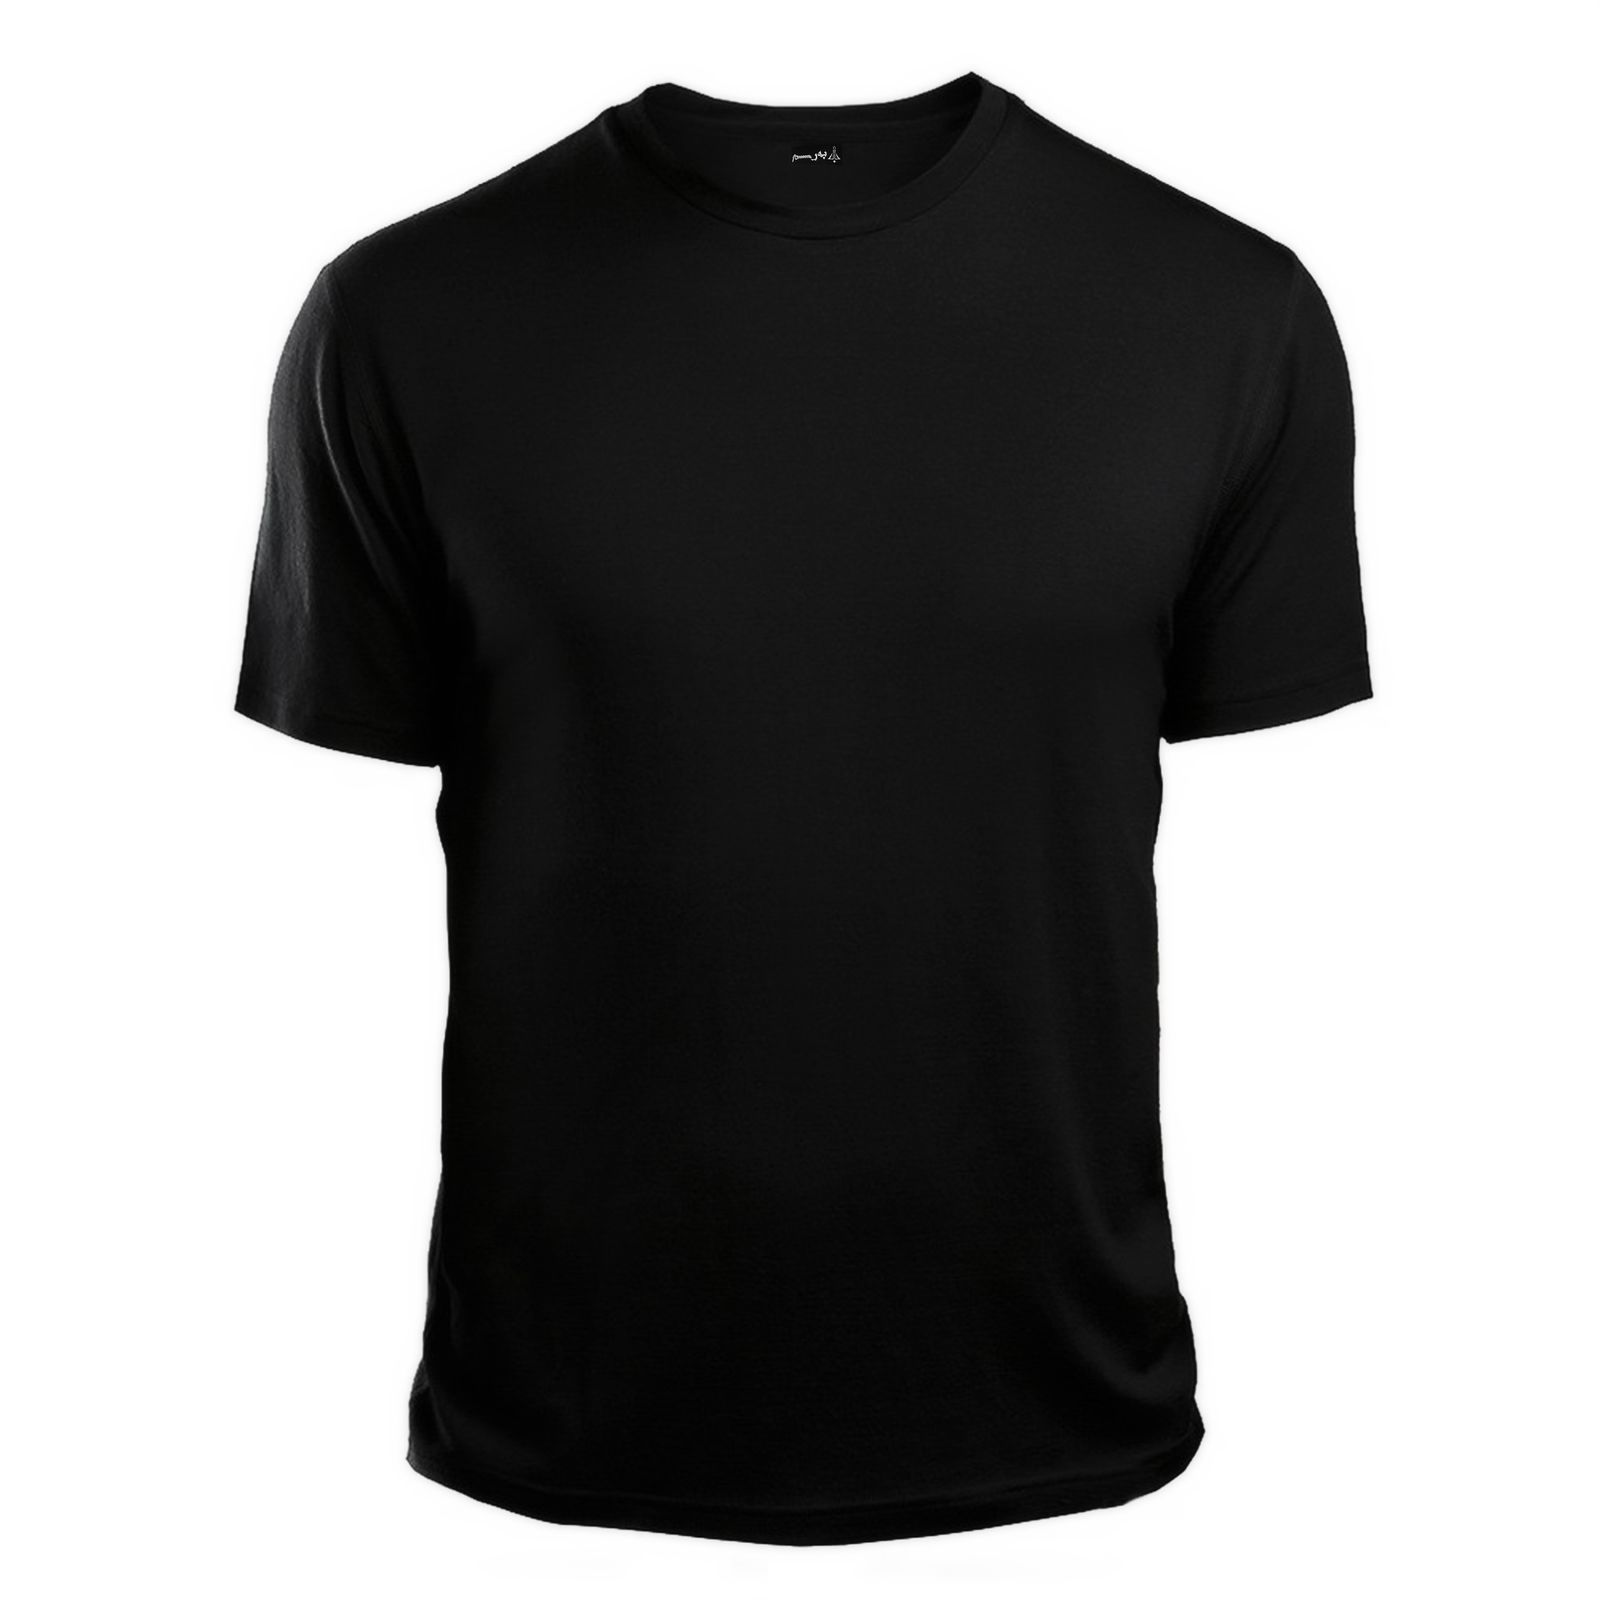 تی شرت آستین کوتاه زنانه به رسم کد 0001 -  - 1